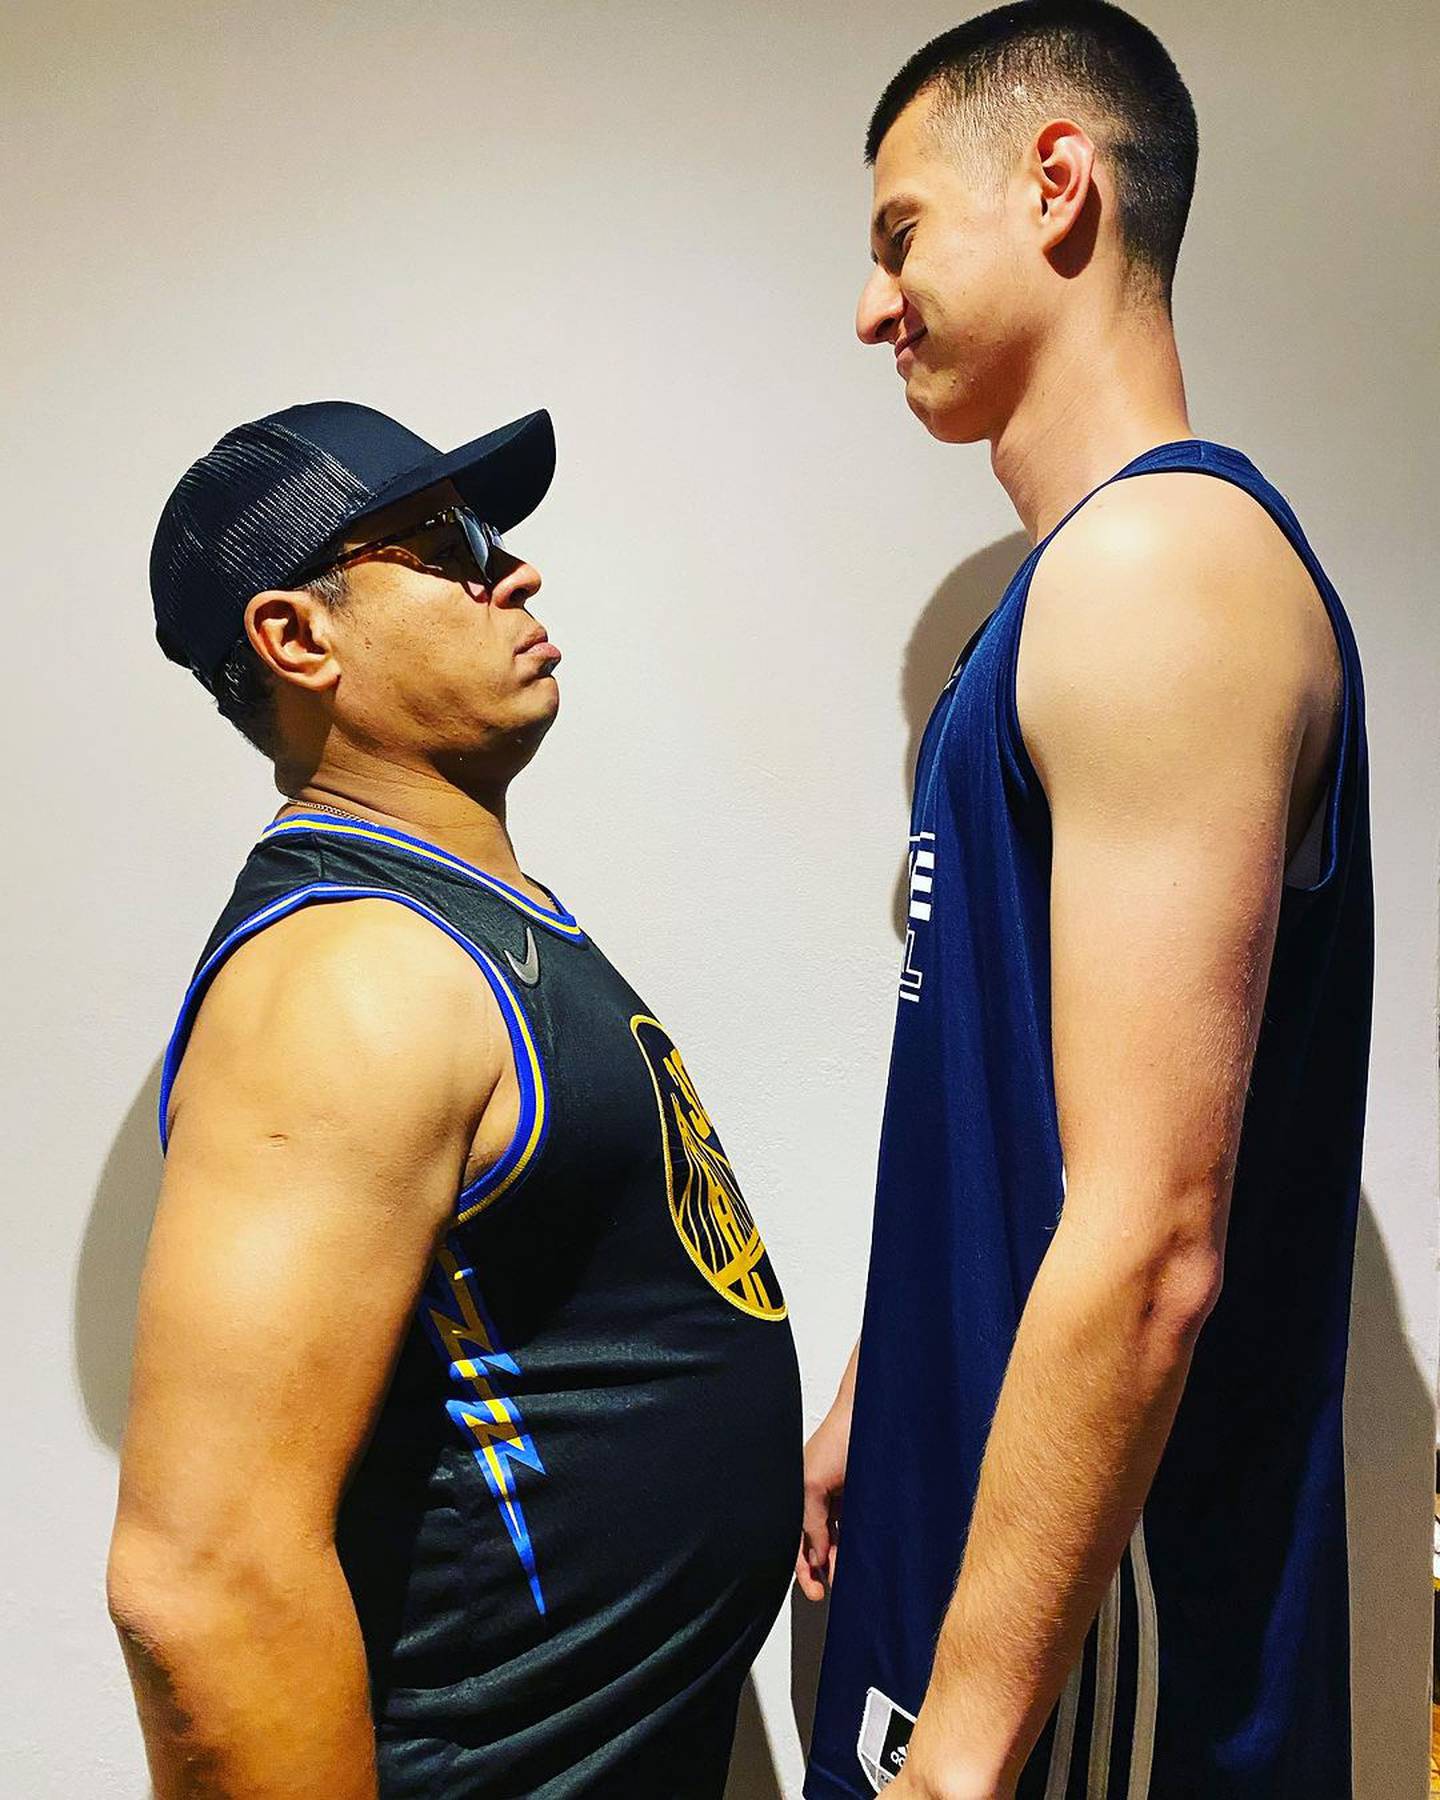 El locutor Jair Cruz y su yerno Esteban Gutiérrez se pusieron un reto de ver quién baja o sube más peso en un mes. Instagram